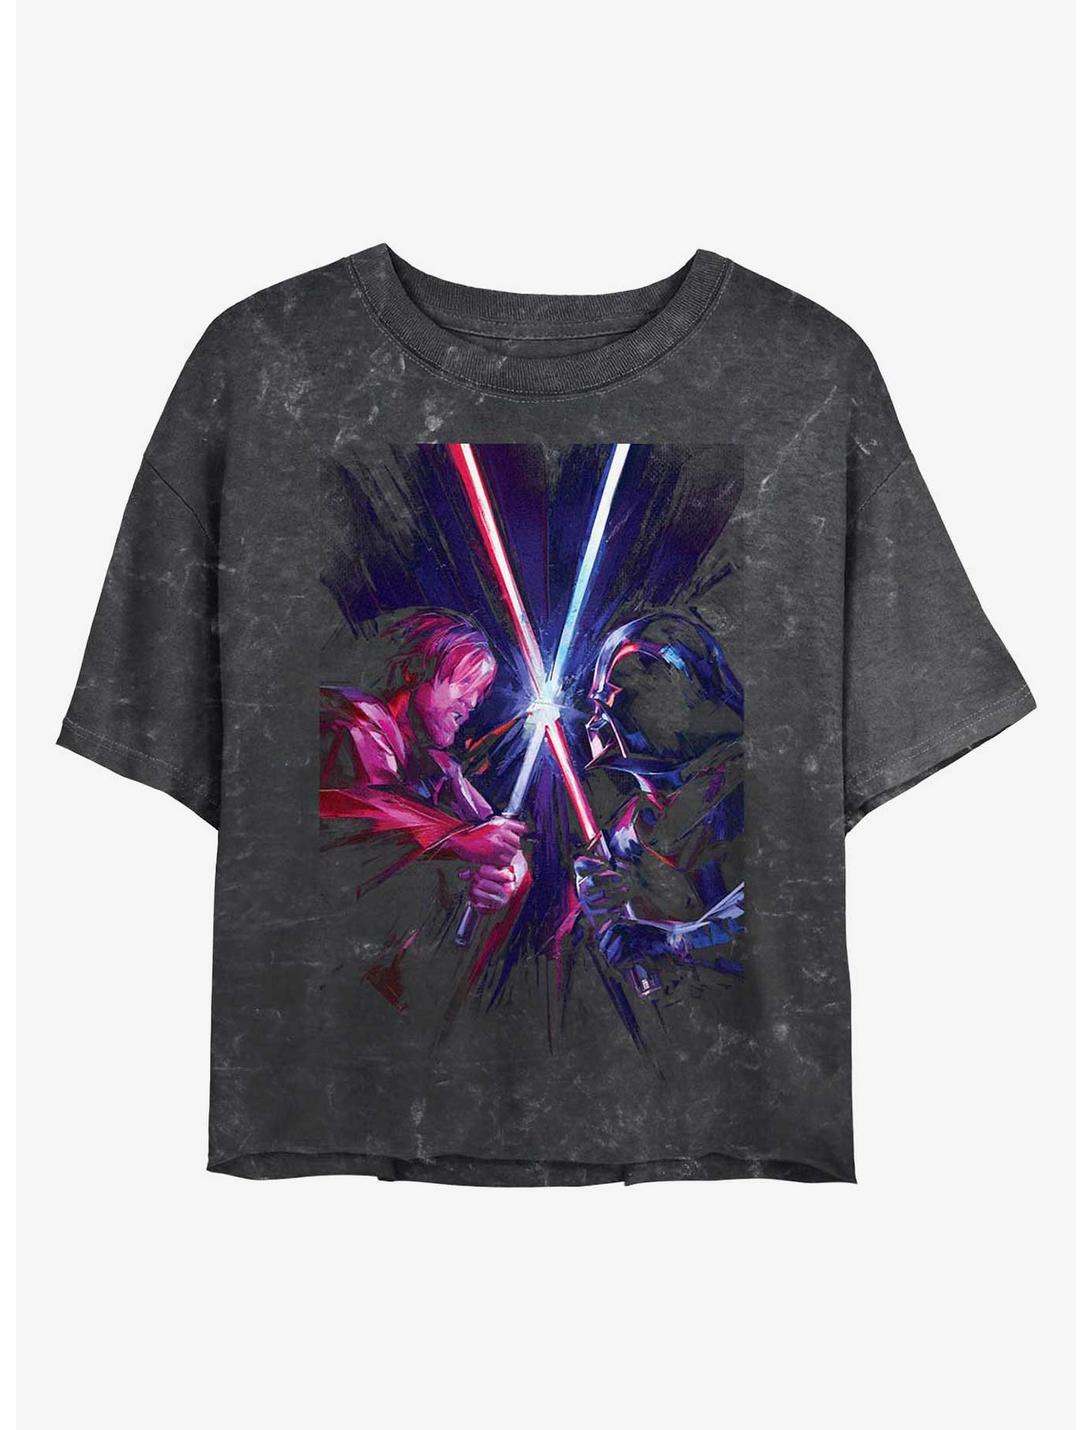 Star Wars Kenobi and Vader Saber Clash Mineral Wash Girls Crop T-Shirt, BLACK, hi-res